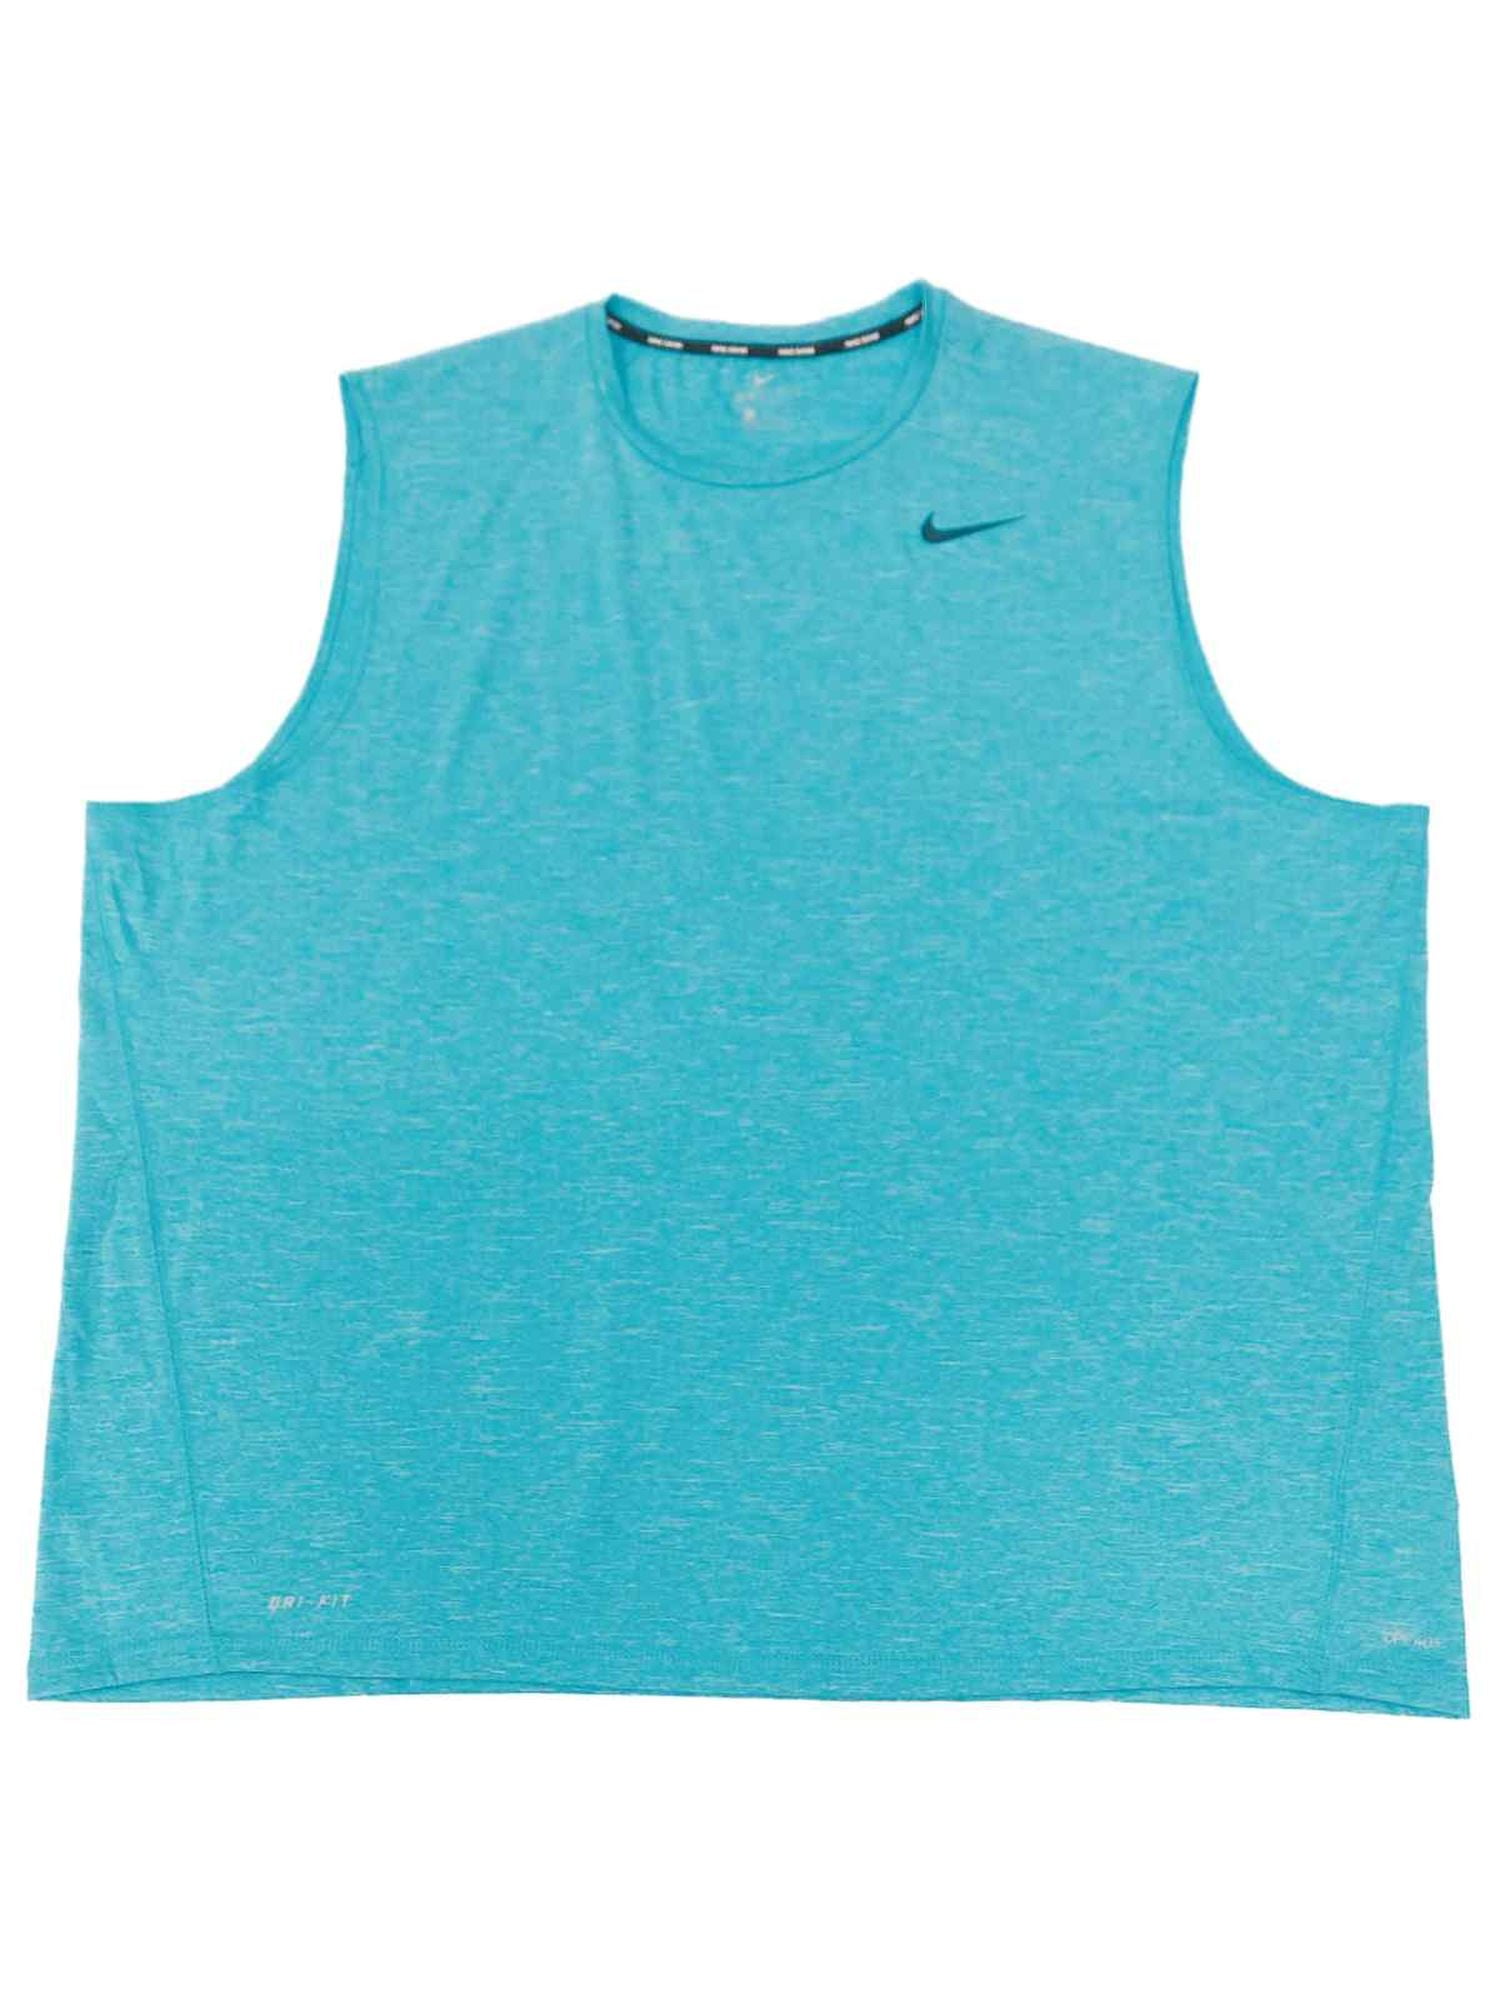 Nike - Nike Swim Mens Blue Heather Dri-fit UPF 40+ Hydroguard ...